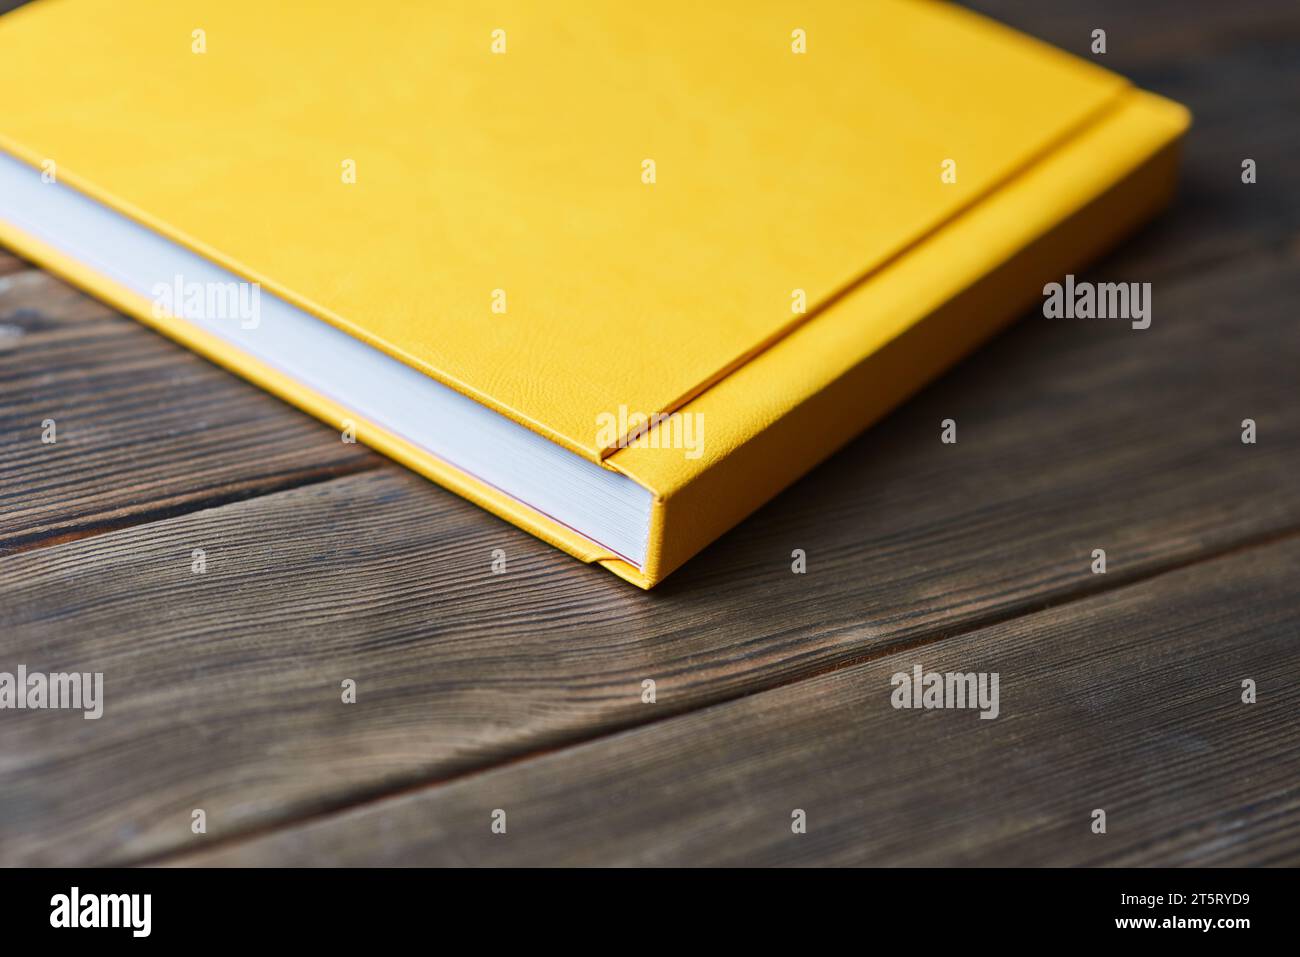 Livre photo à couverture rigide jaune isolé sur un fond en bois avec espace de copie. Vue en perspective. Maquette de livre fermé vierge pour le placement de texte personnalisé ou d'imag Banque D'Images